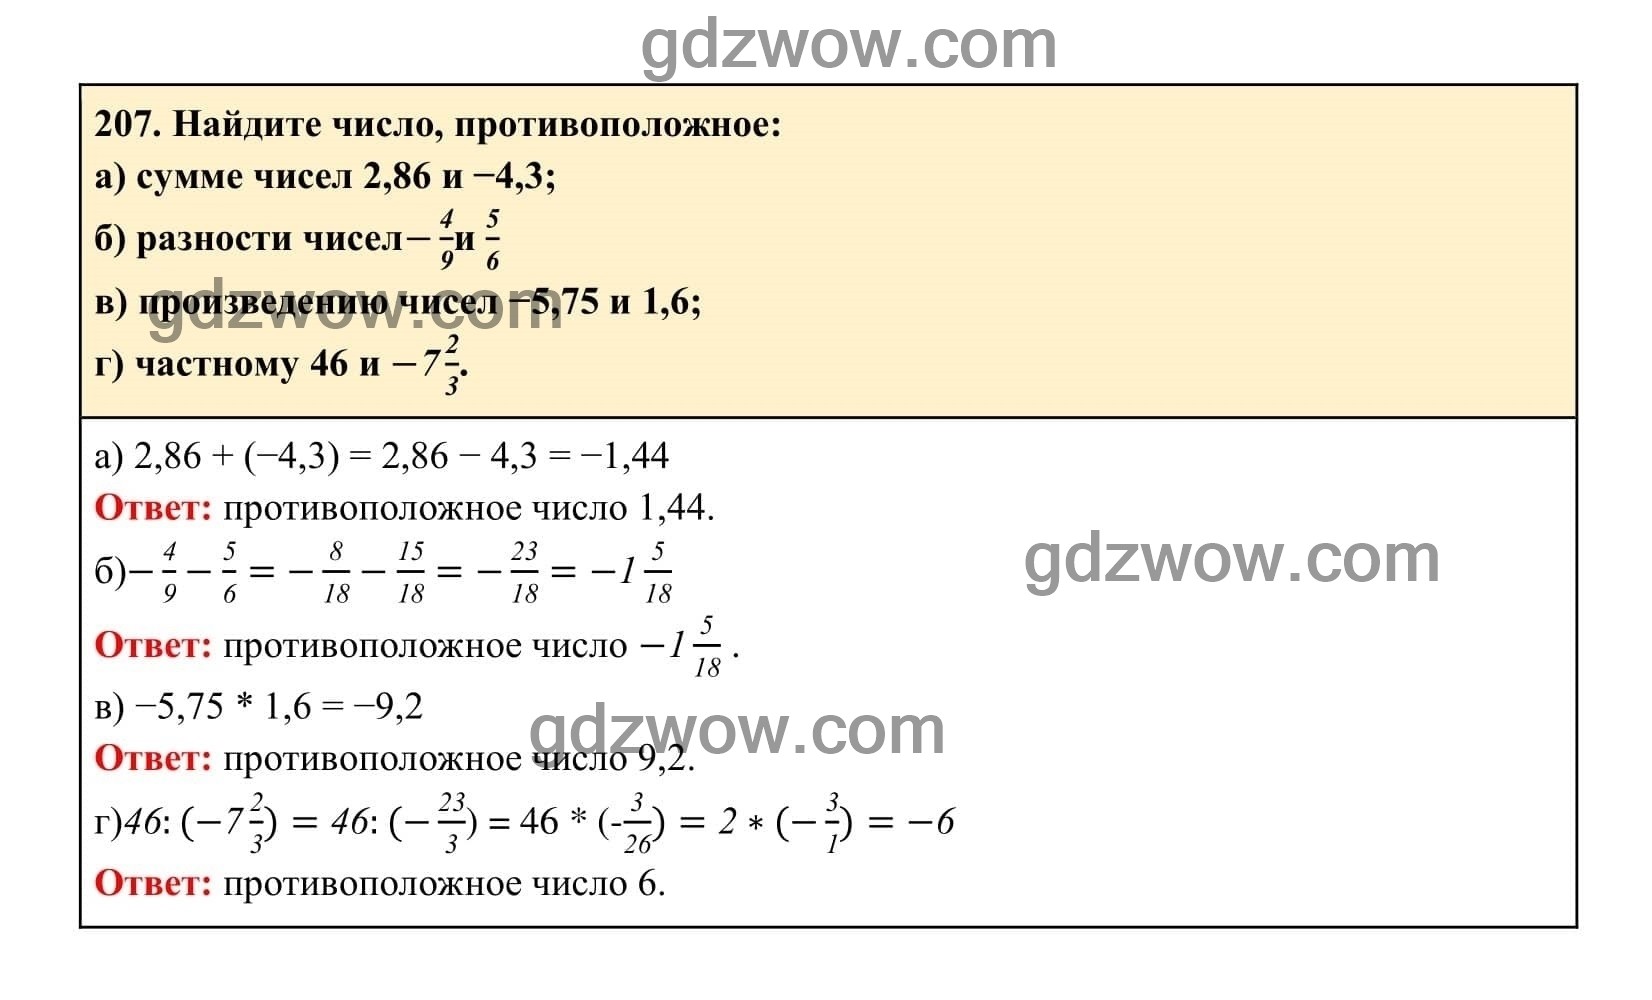 Упражнение 207 - ГДЗ по Алгебре 7 класс Учебник Макарычев (решебник) - GDZwow